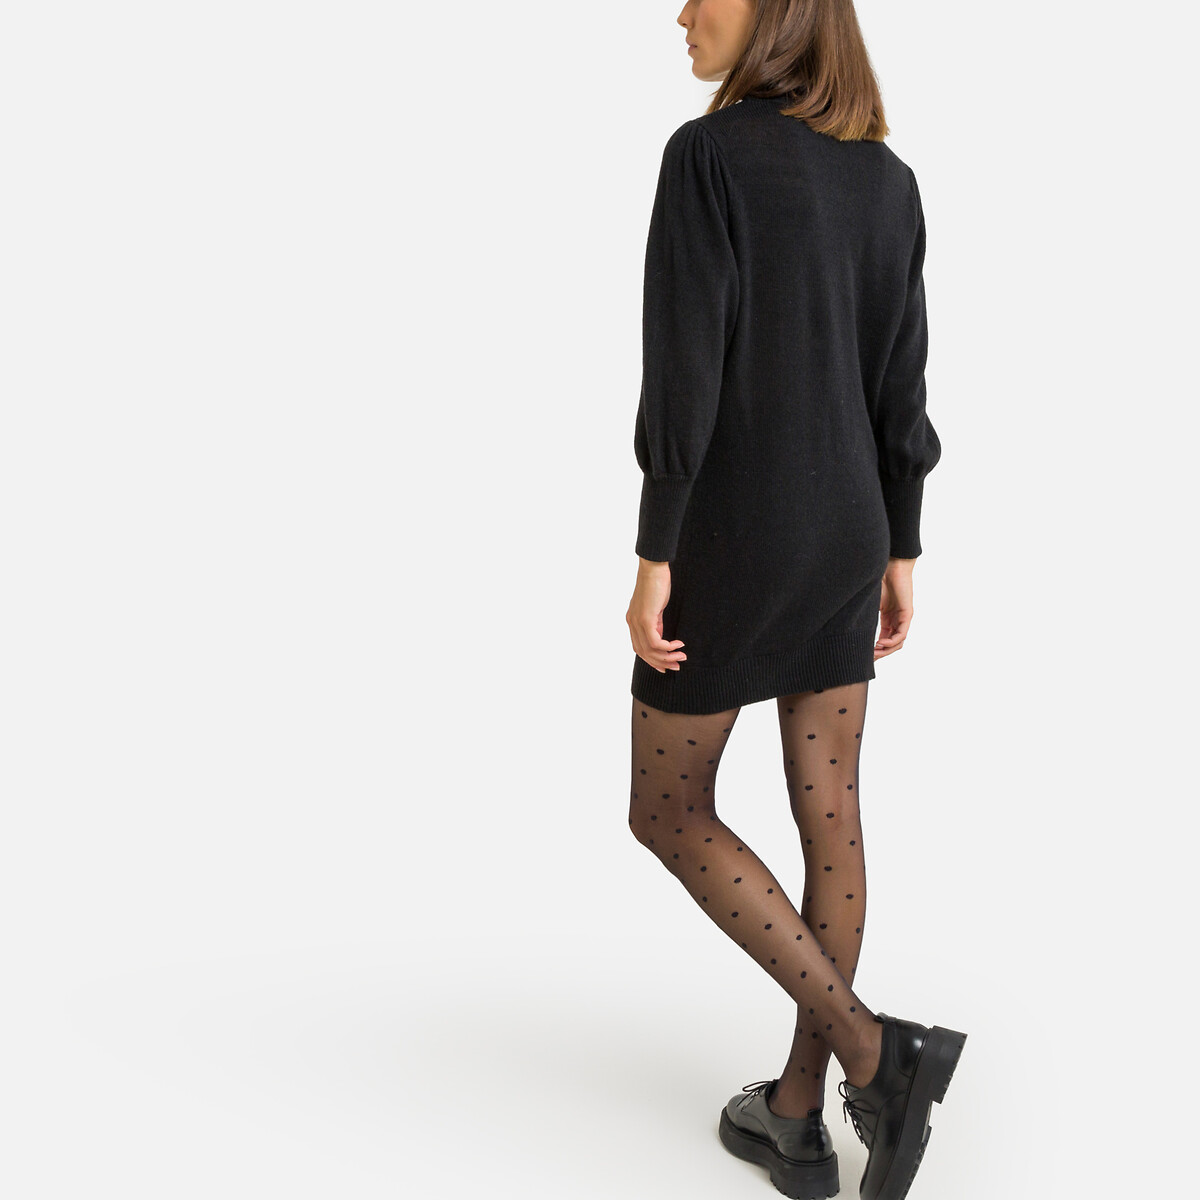 Платье-пуловер SEE U SOON Платье-пуловер Воротник-стойка S/M черный, размер S/M Платье-пуловер Воротник-стойка S/M черный - фото 4